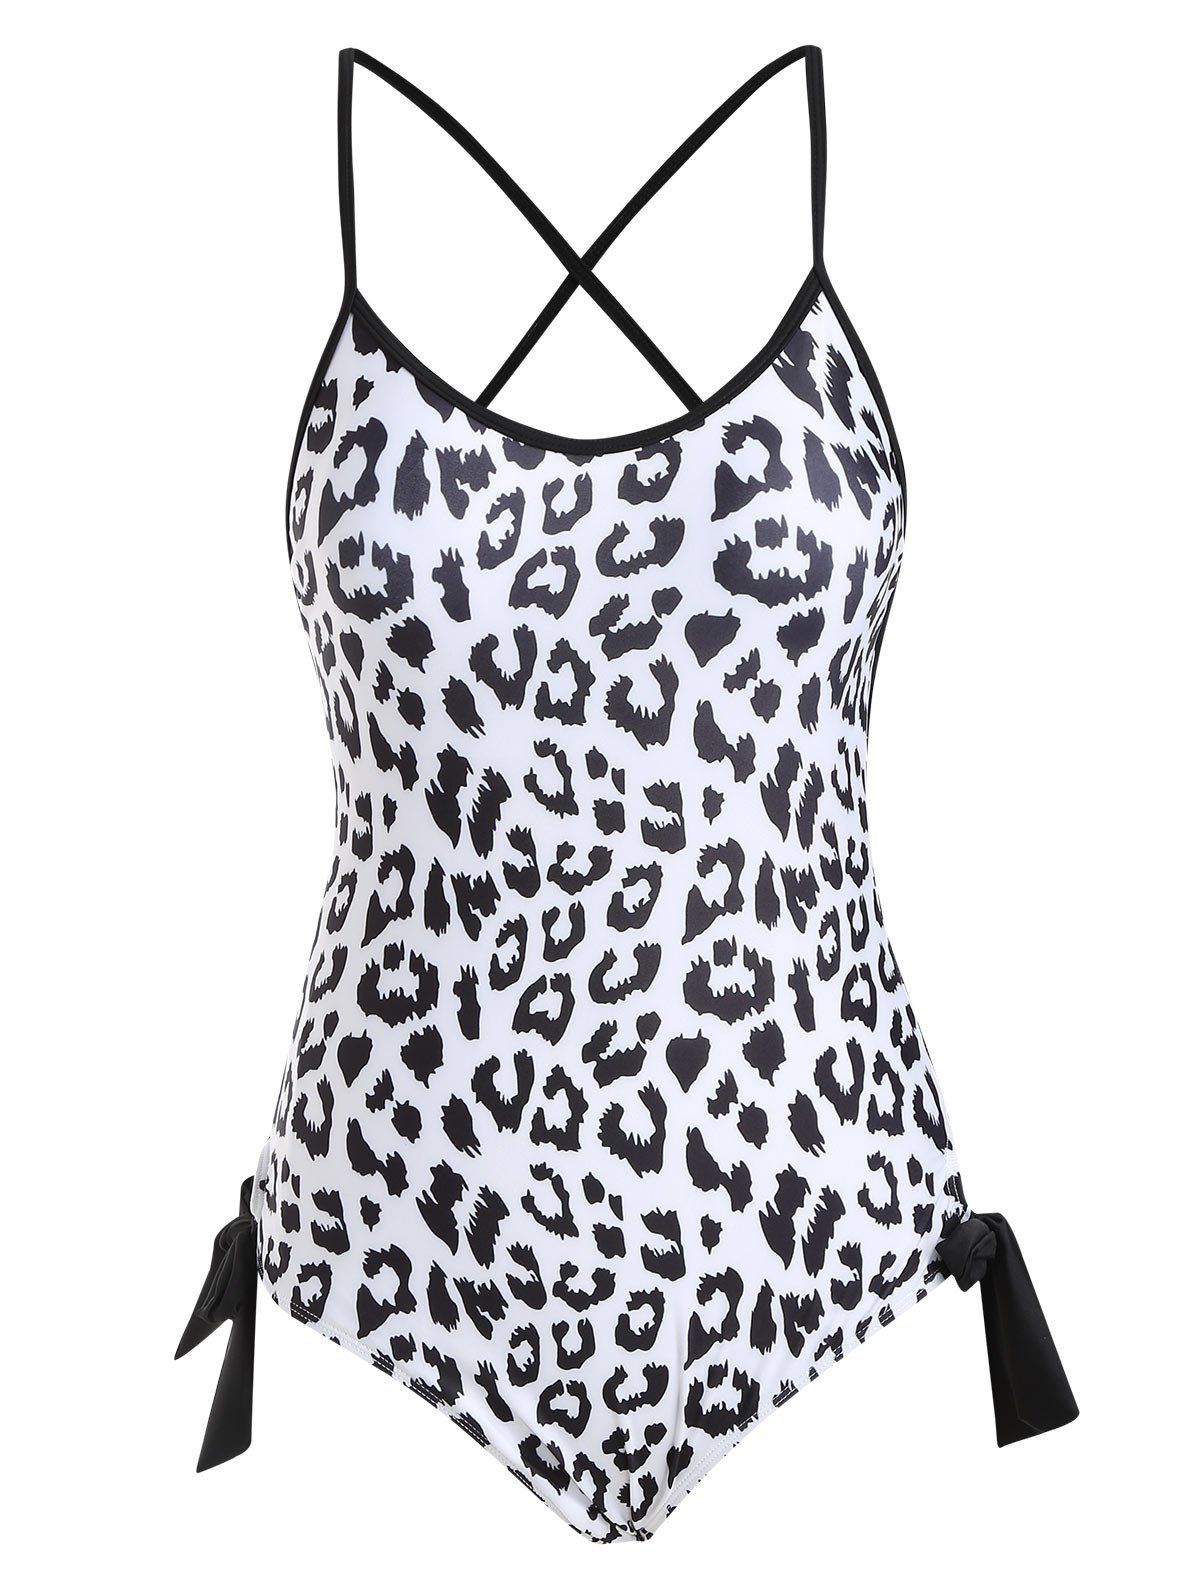 Tie Side Criss Cross Leopard One-piece Swimsuit - BLACK M